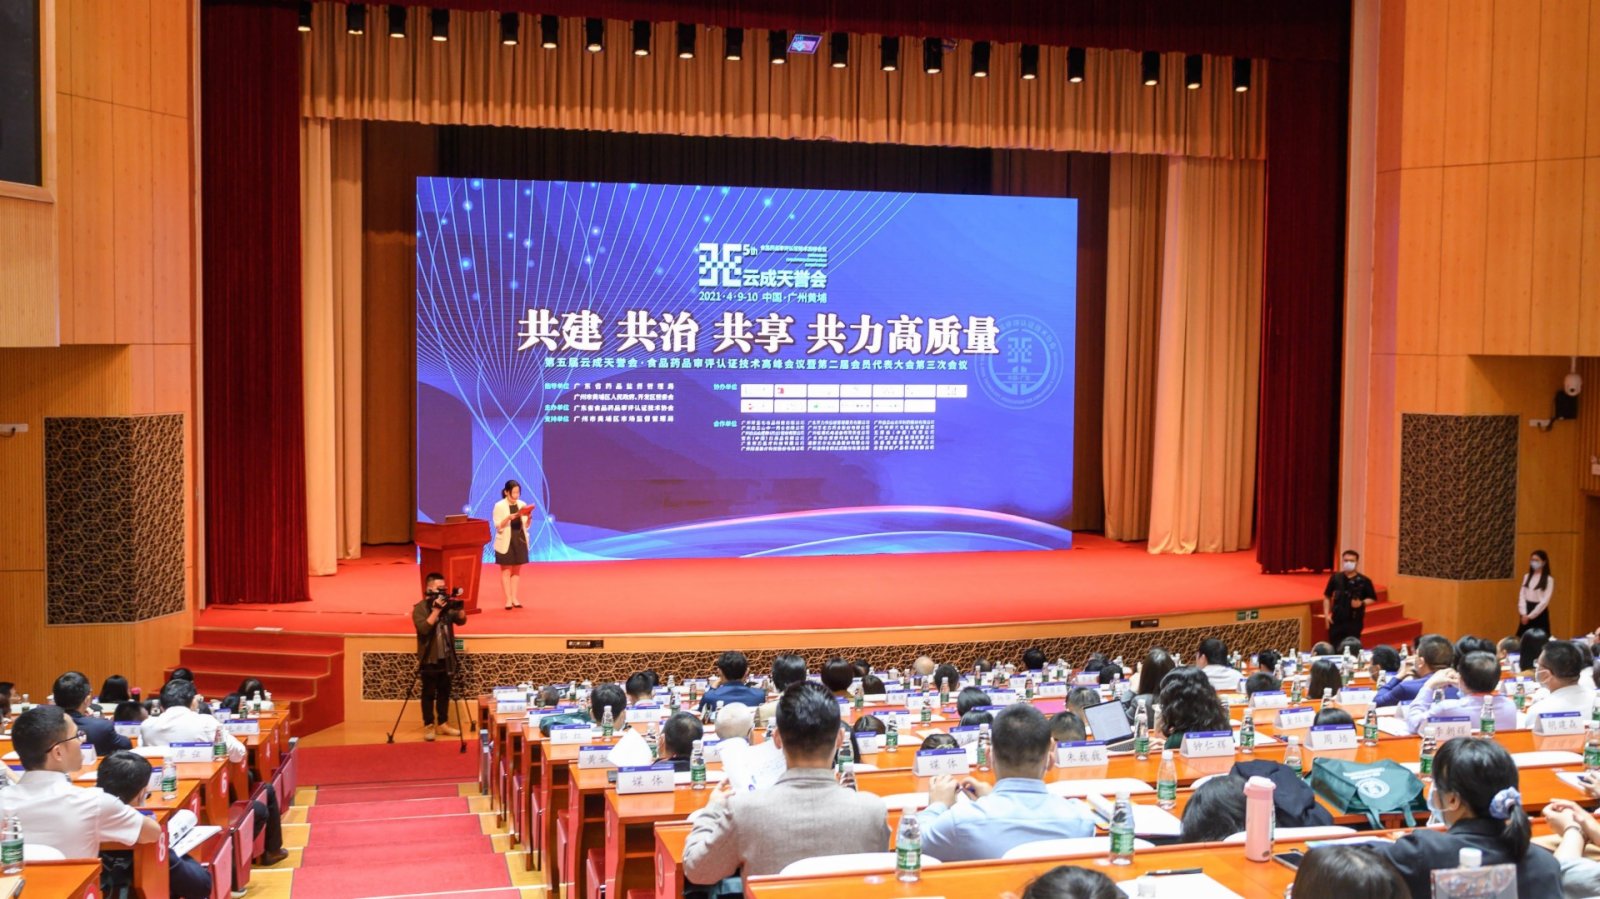 粵港澳生物醫藥和生物醫學工程產業大會在廣州召開